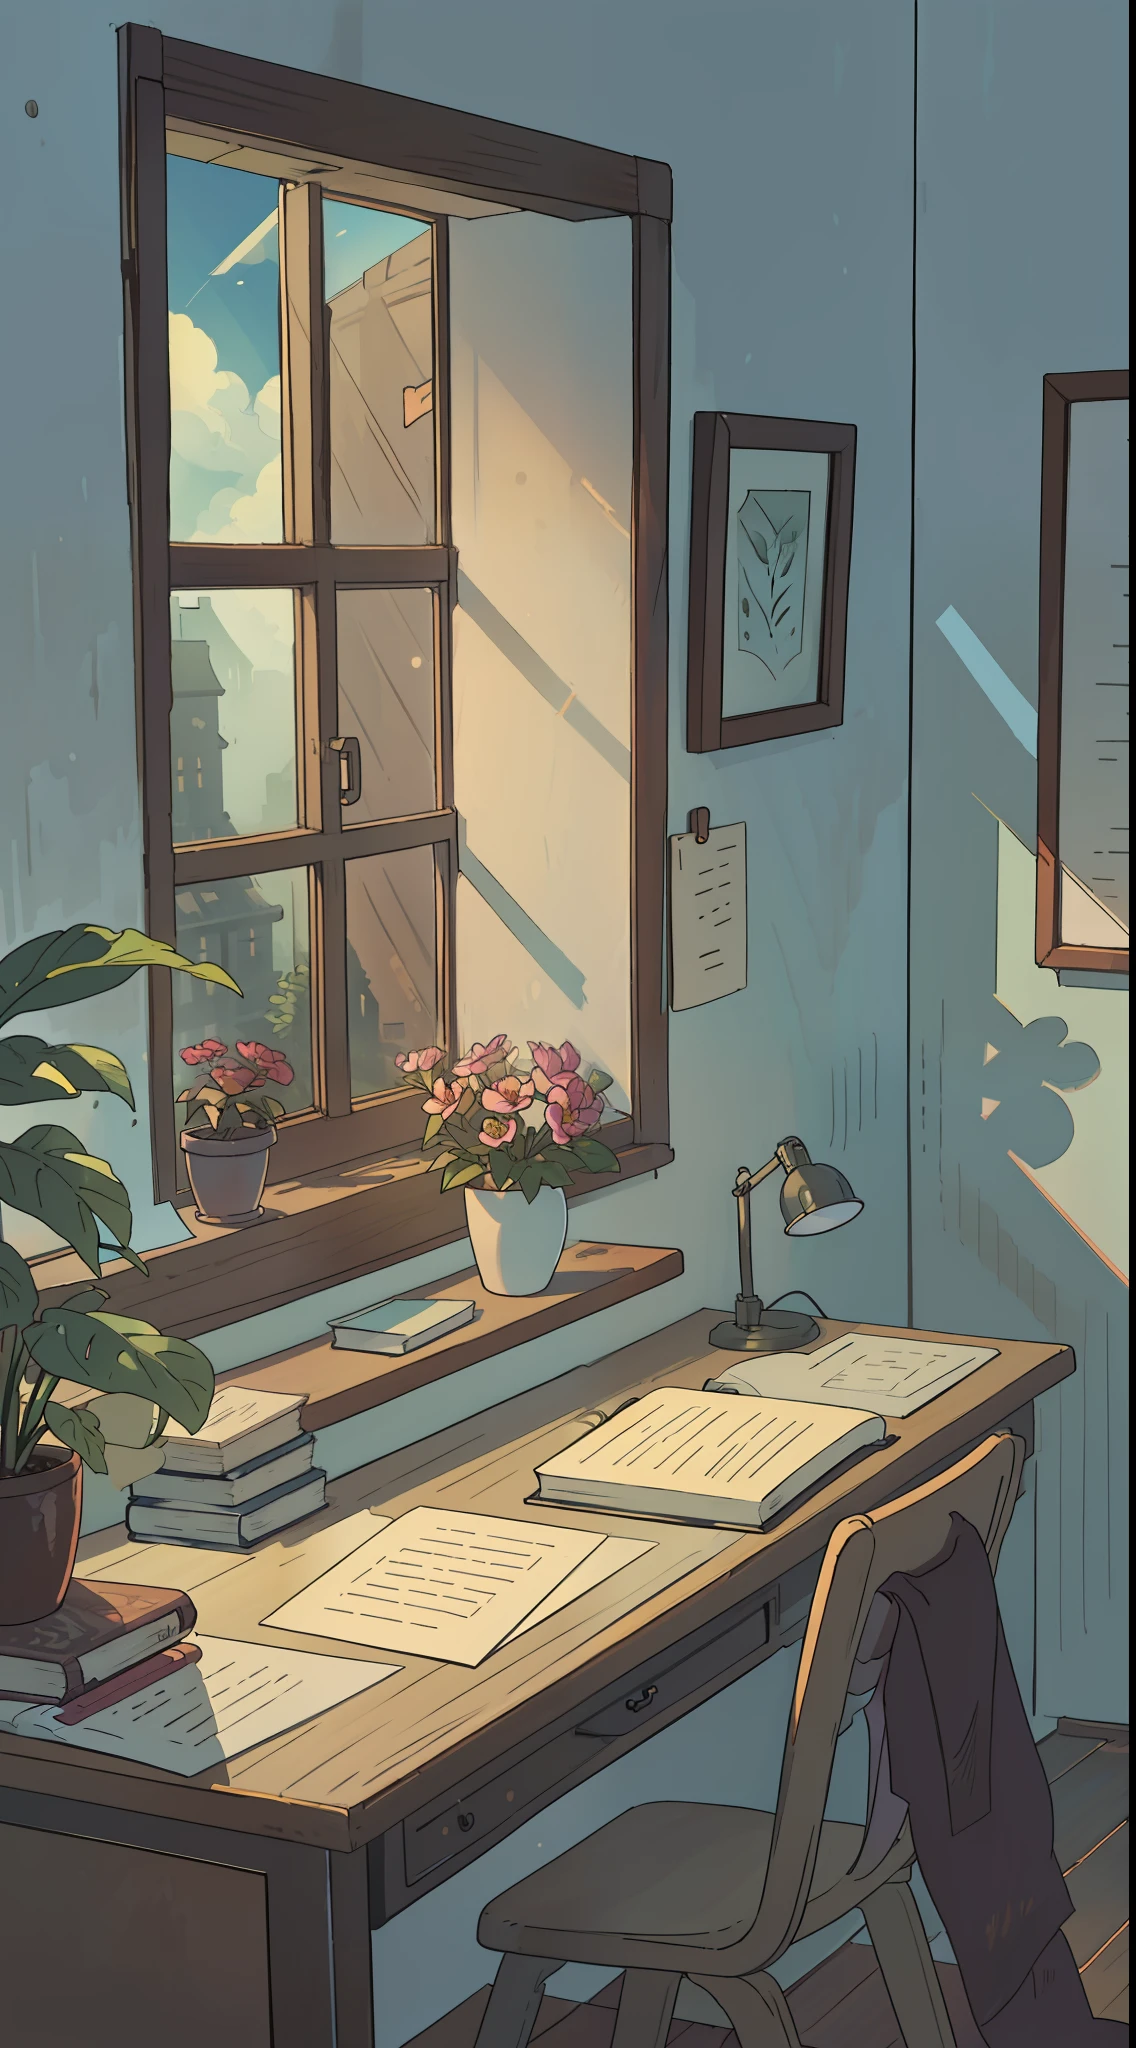 마스터 피스，최고의 품질，고품질，이른 아침에，책상은 창가에 있어요，책상 위 창문을 통해 햇빛이 비치고 있다，창가에 꽃이 피었어요，식물，책